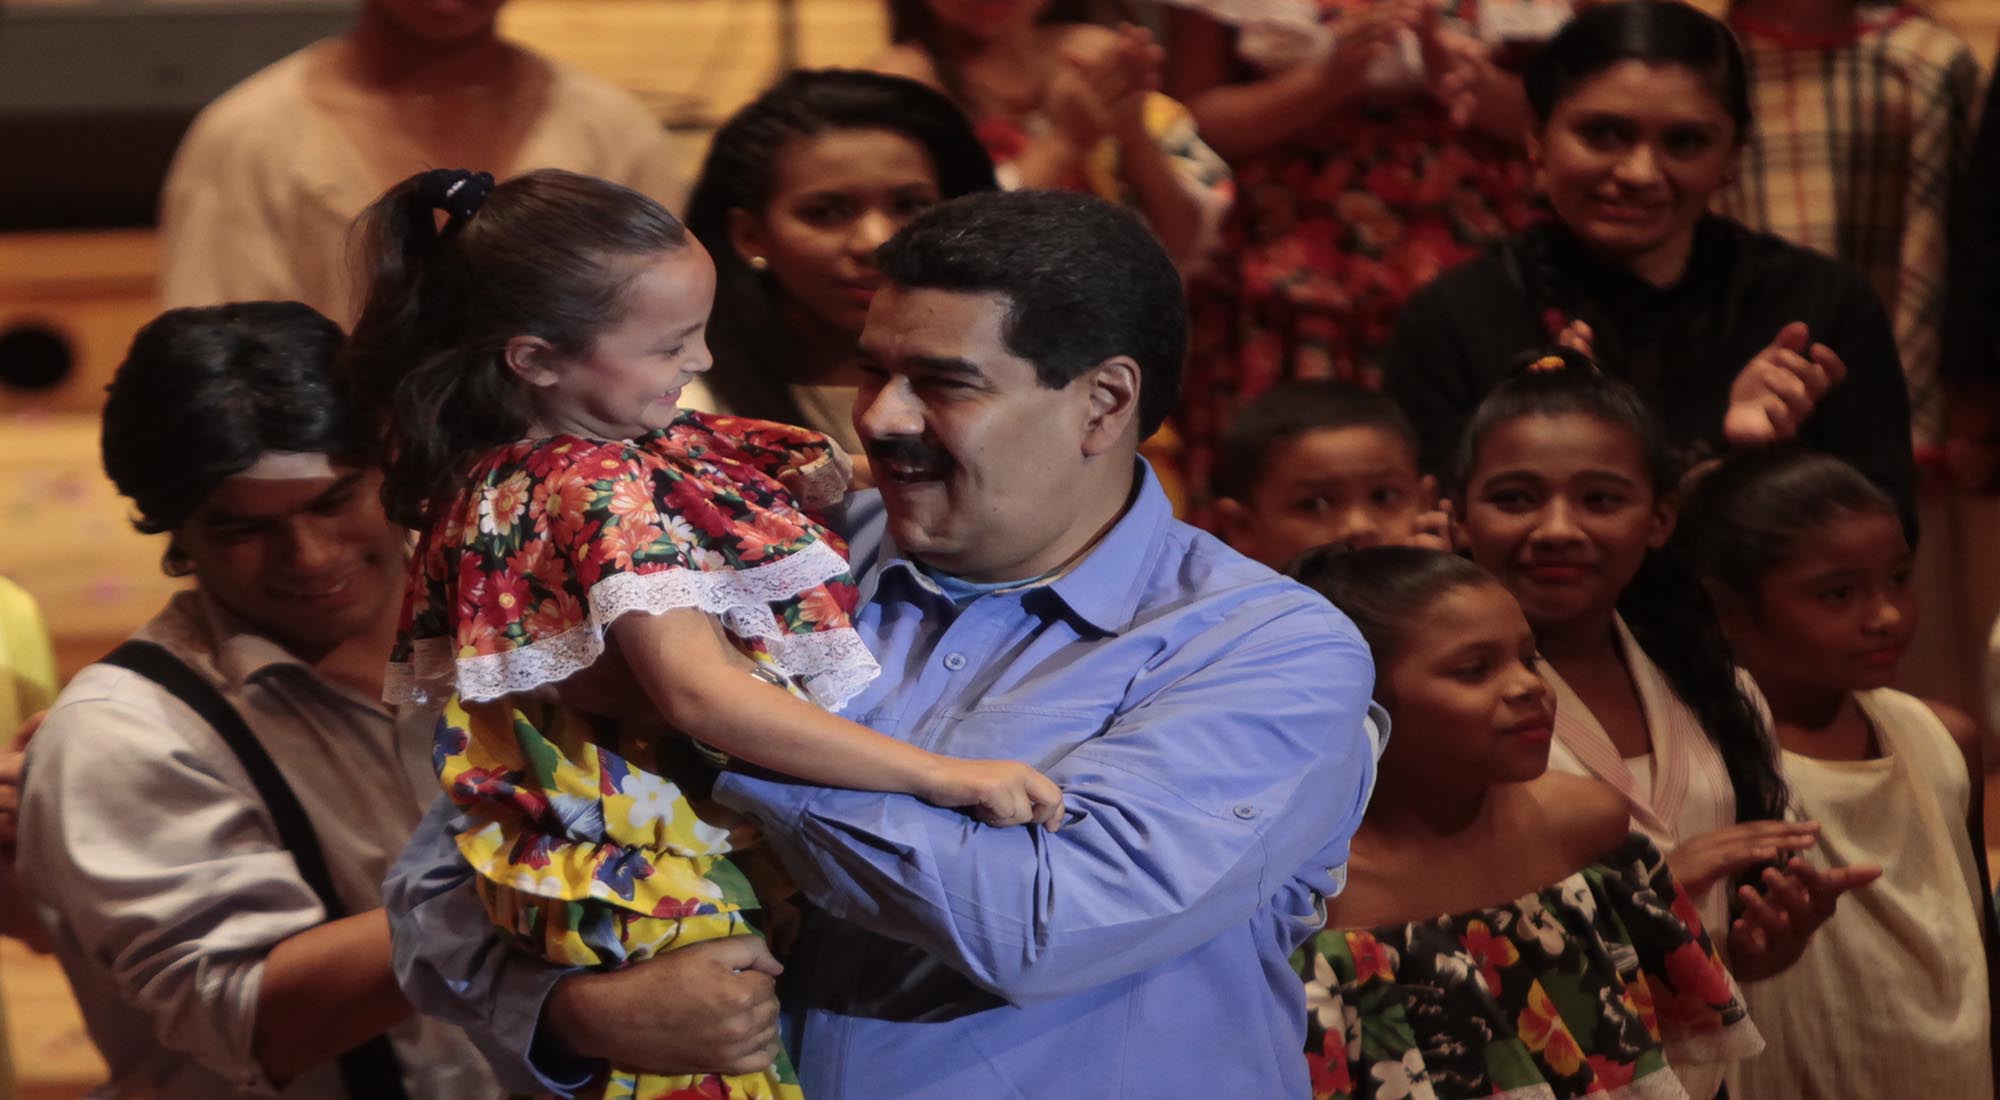 El presidente Maduro respalda la masificación de la cultura y el deporte en Venezuela (Foto:AVN)